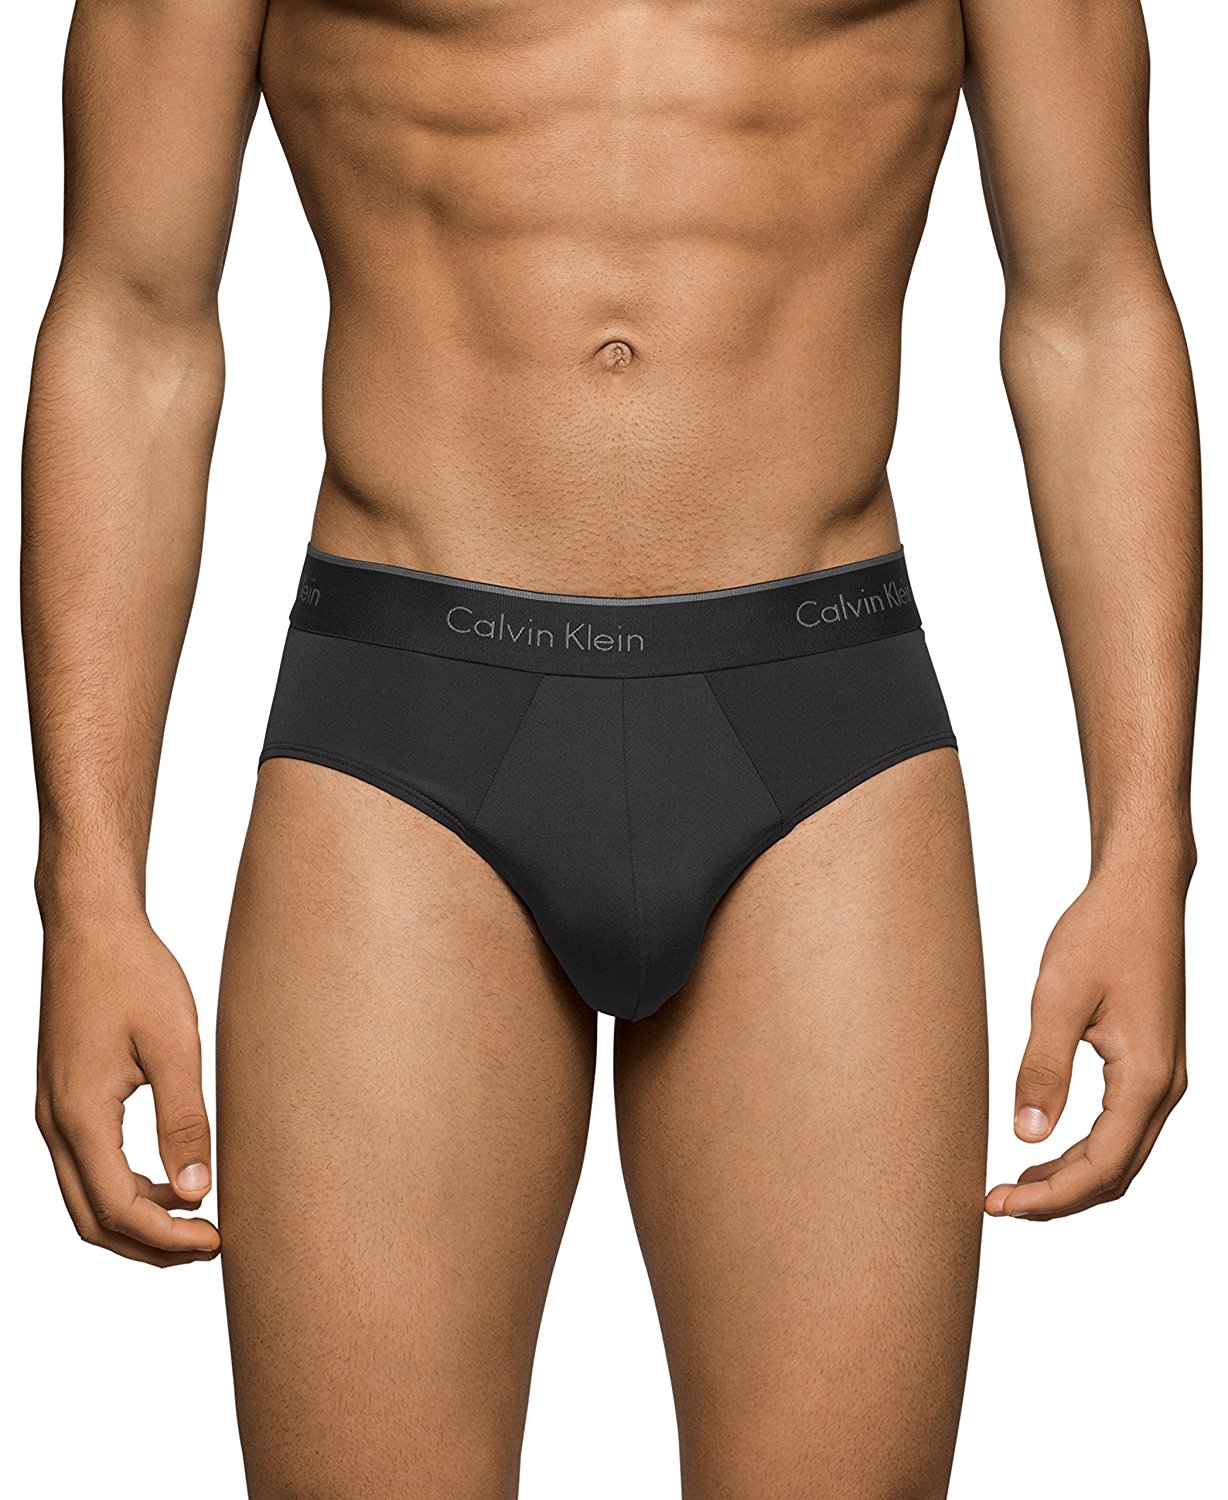 Calvin Klein Men S Underwear Microfiber Stretch Pack Brief Black Size Large Ebay